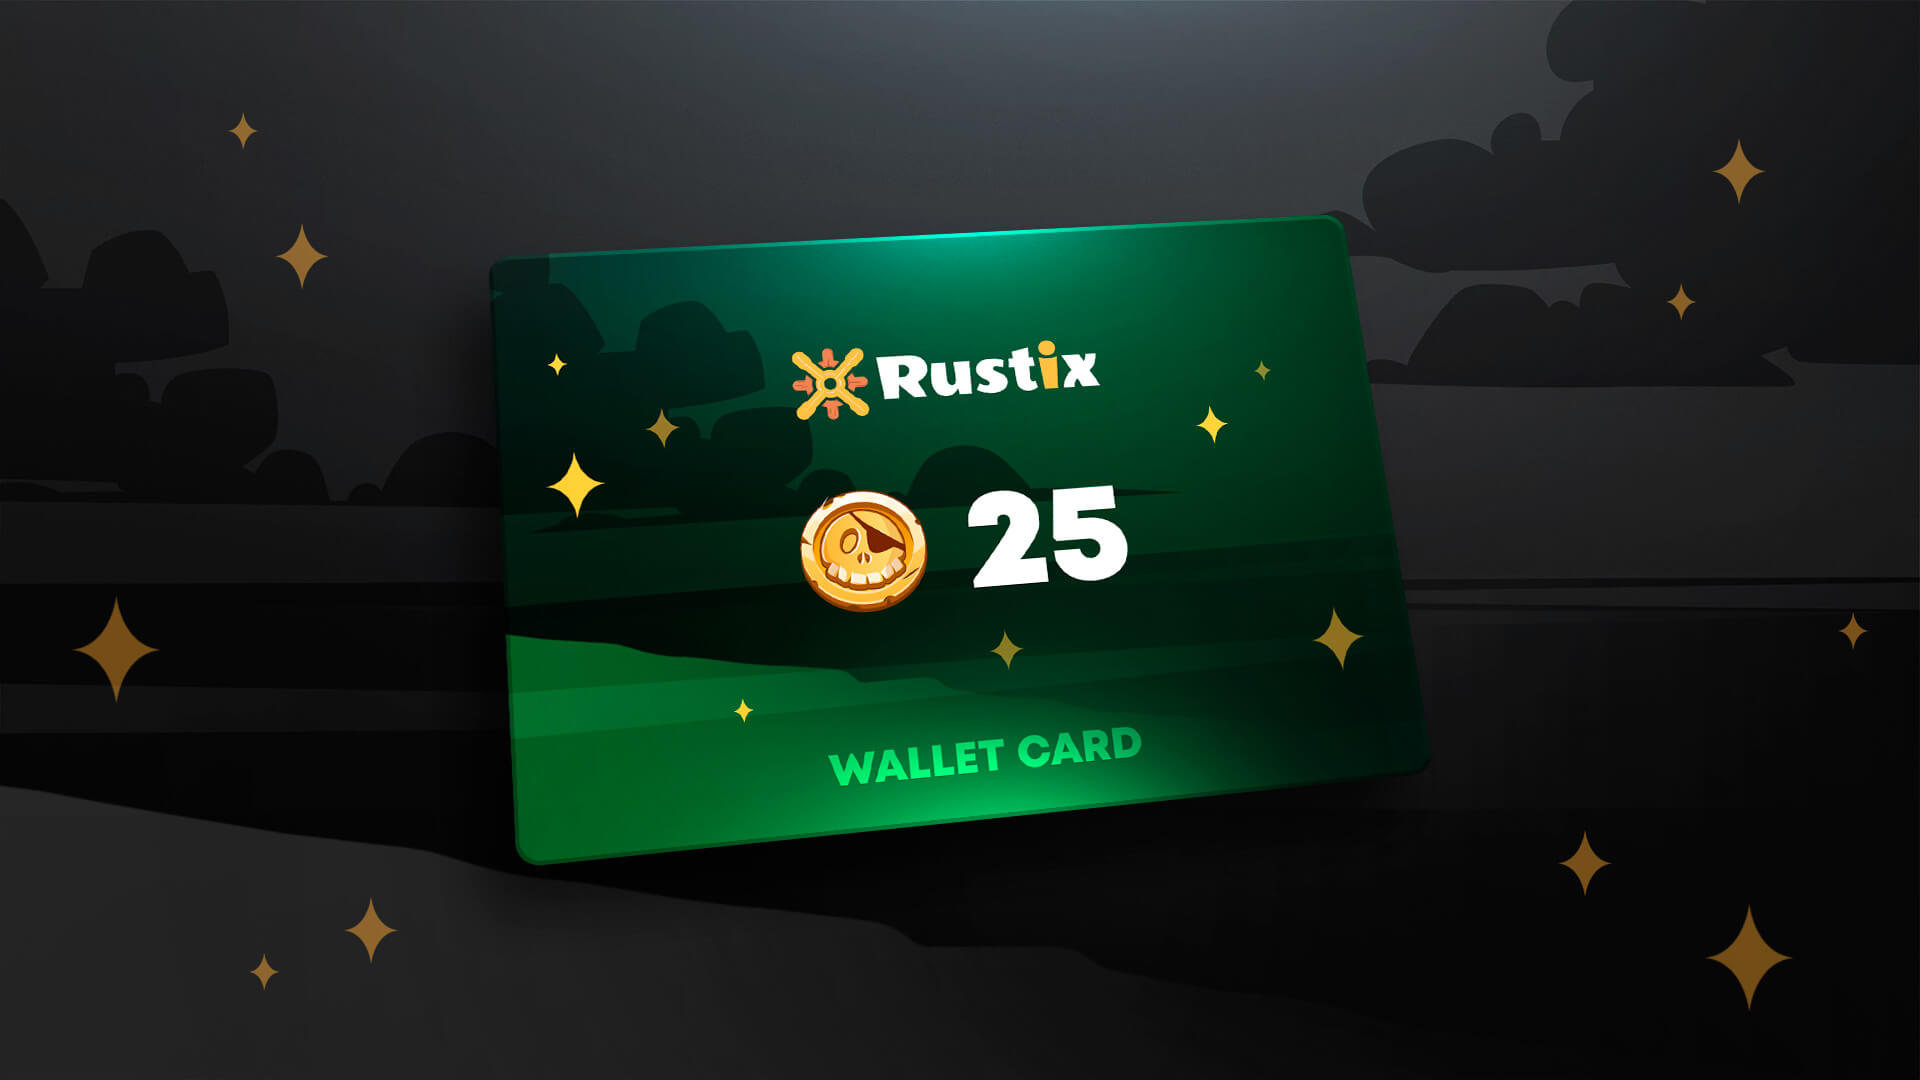 Rustix.io 25 USD Wallet Card Code, 28.25 usd